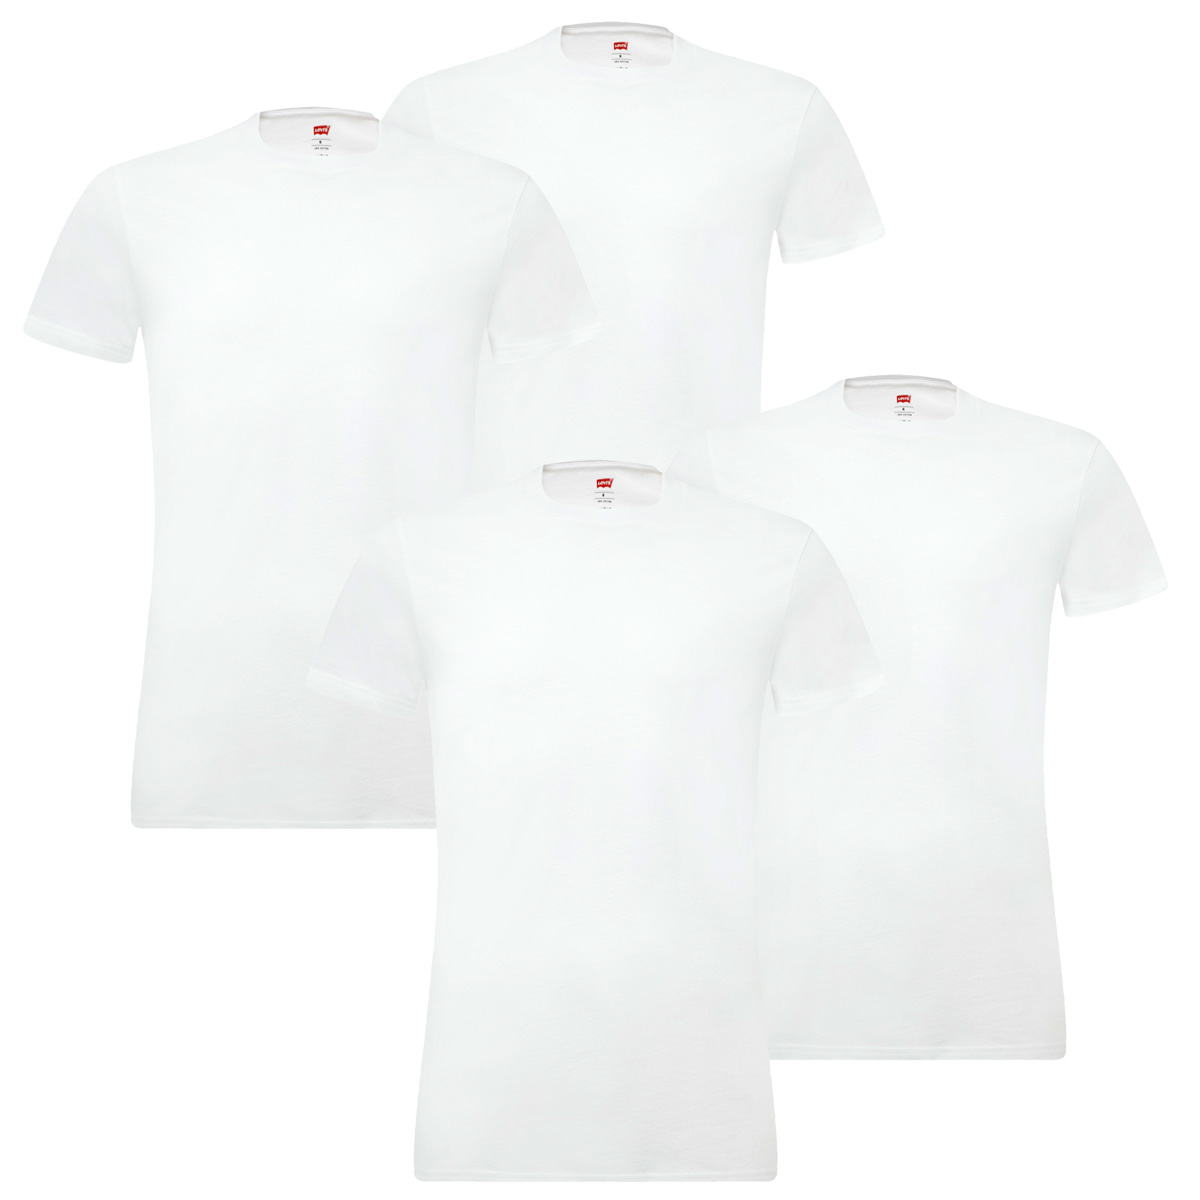 4er Pack Levis Solid Crew T-Shirt Men Herren Unterhemd Rundhals Stretch Cotton